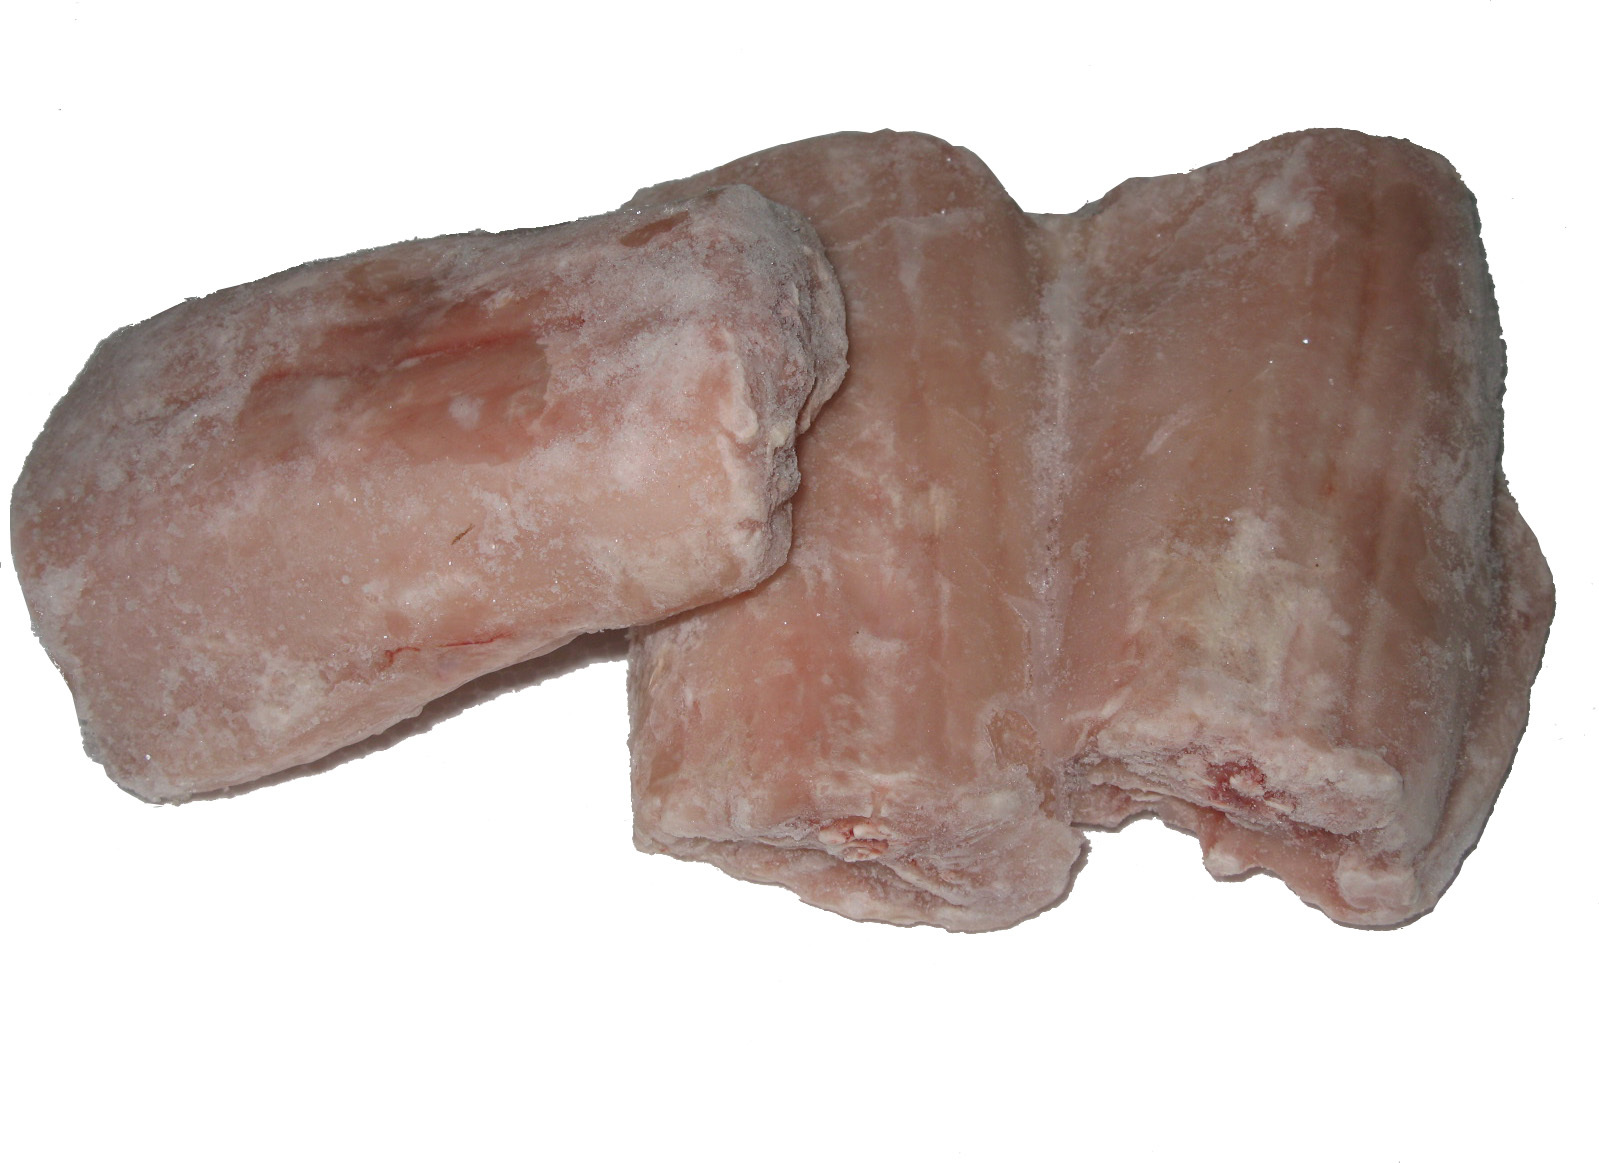 蟒蛇肉包邮发顺丰 冷冻肉 鲜嫩 美容 高蛋白质、低胆固醇 元旦